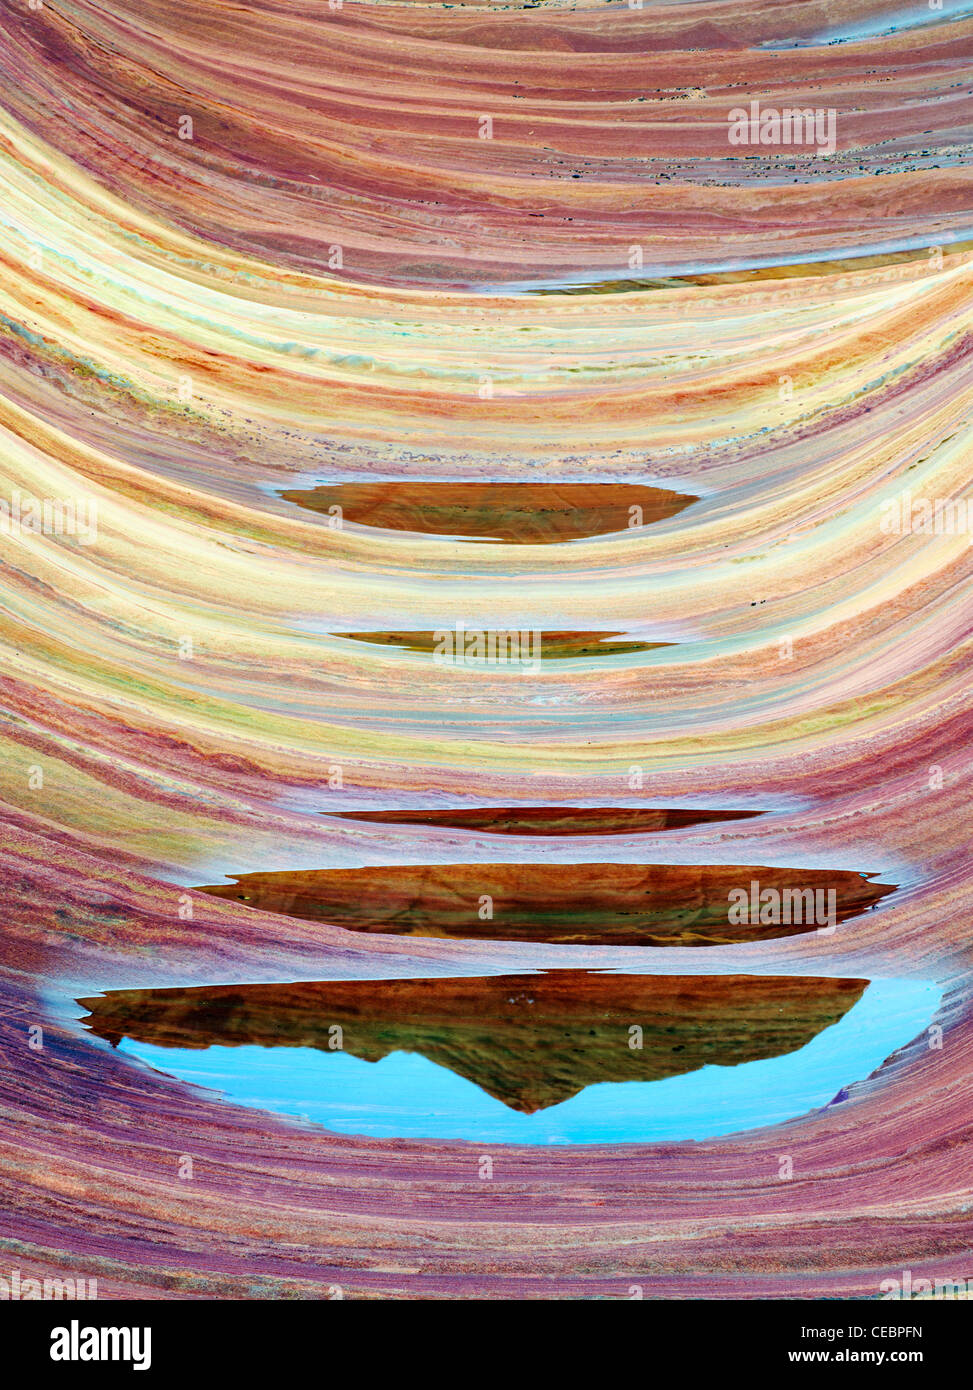 Formation Sandtone et piscine de l'eau en Amérique du Coyote Buttes, l'onde. Paria Canyon Vermillion Cliffs Wilderness. Utah/Arizona Banque D'Images